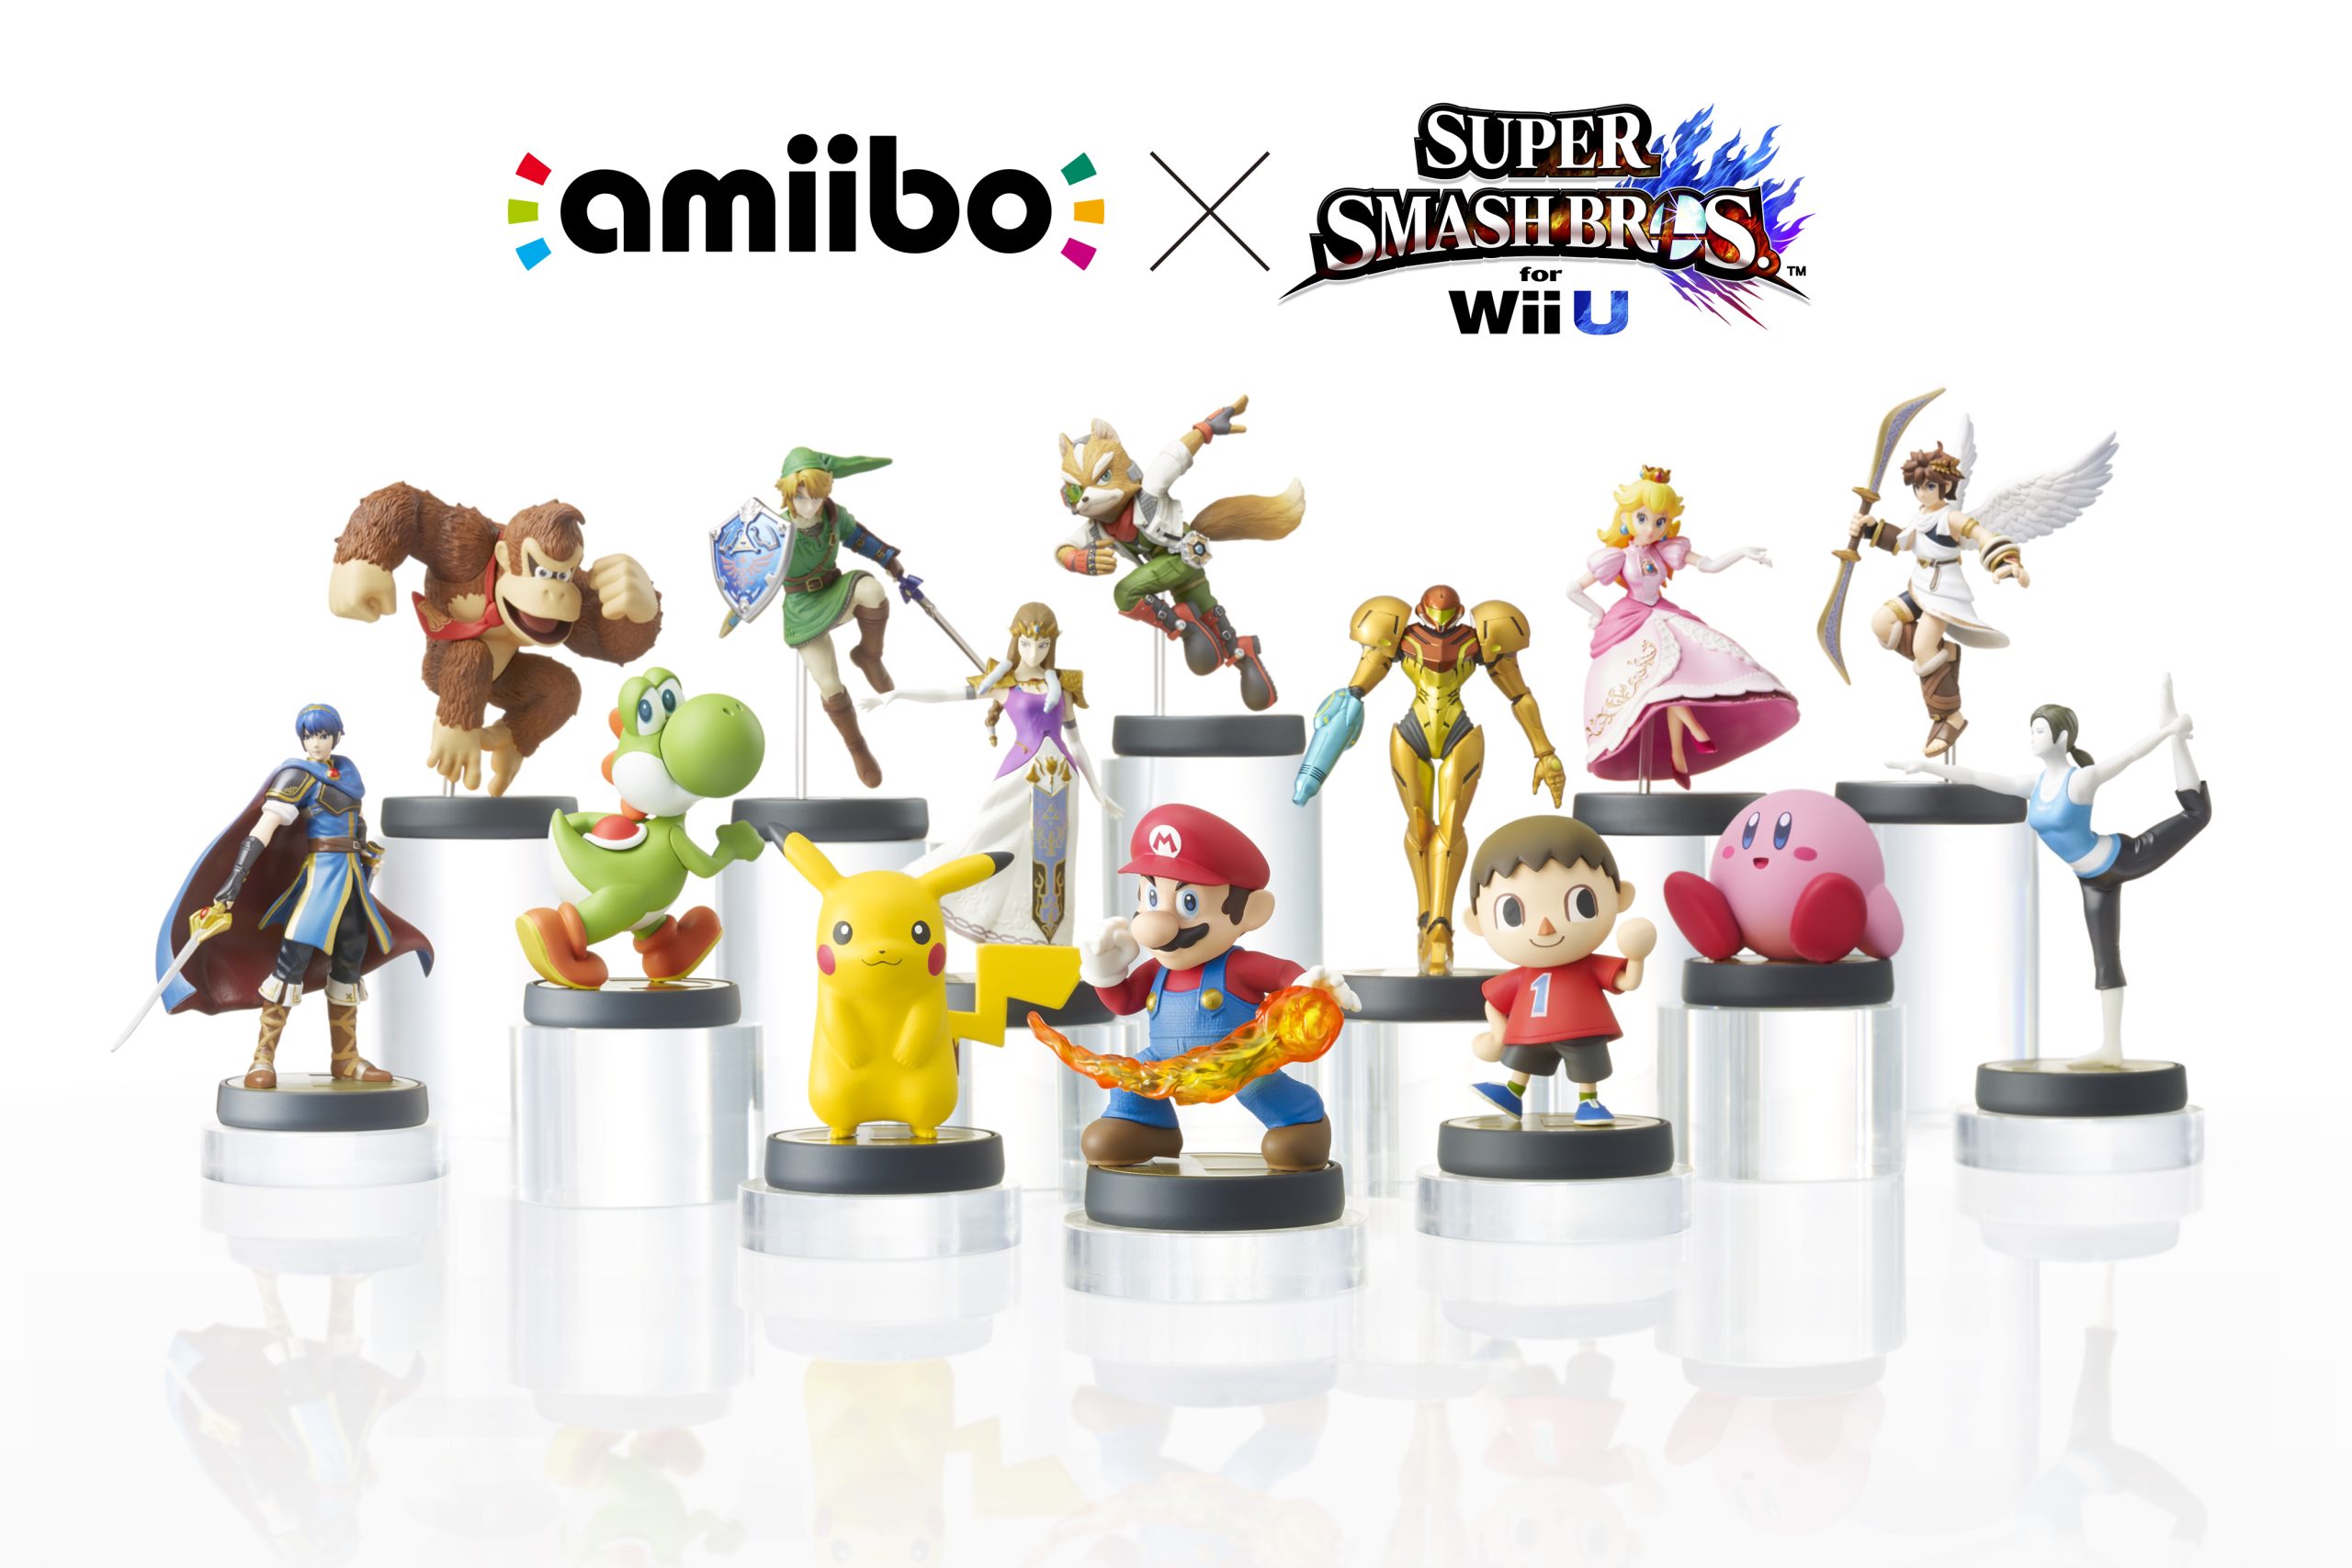 E3 2014: Nintendo introduces amiibo figurine platform, Smash Bros gets first dibs